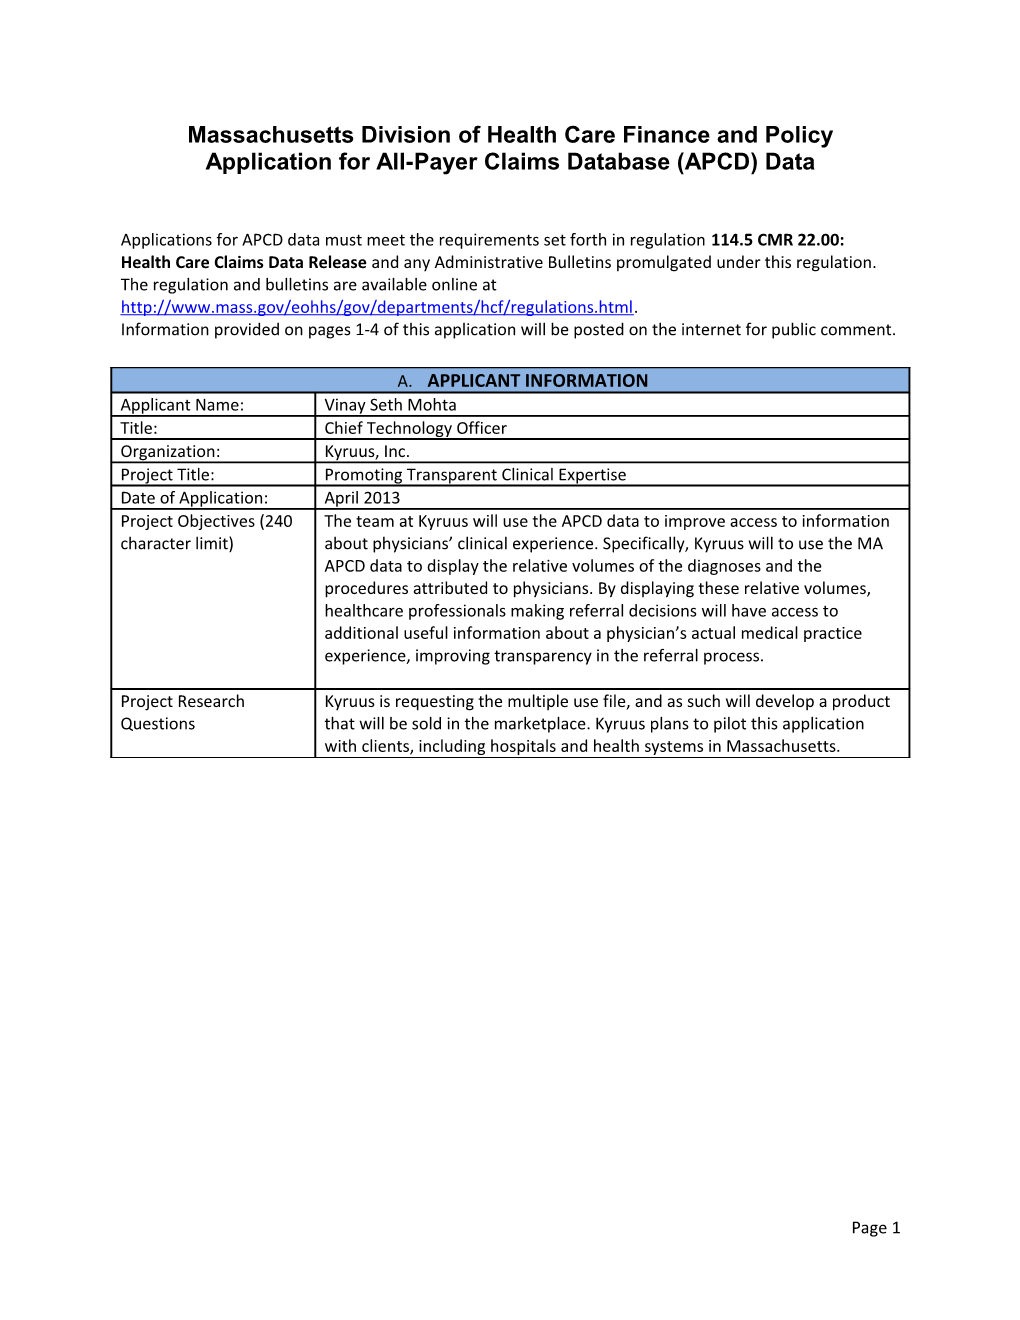 APCD Data Release Application